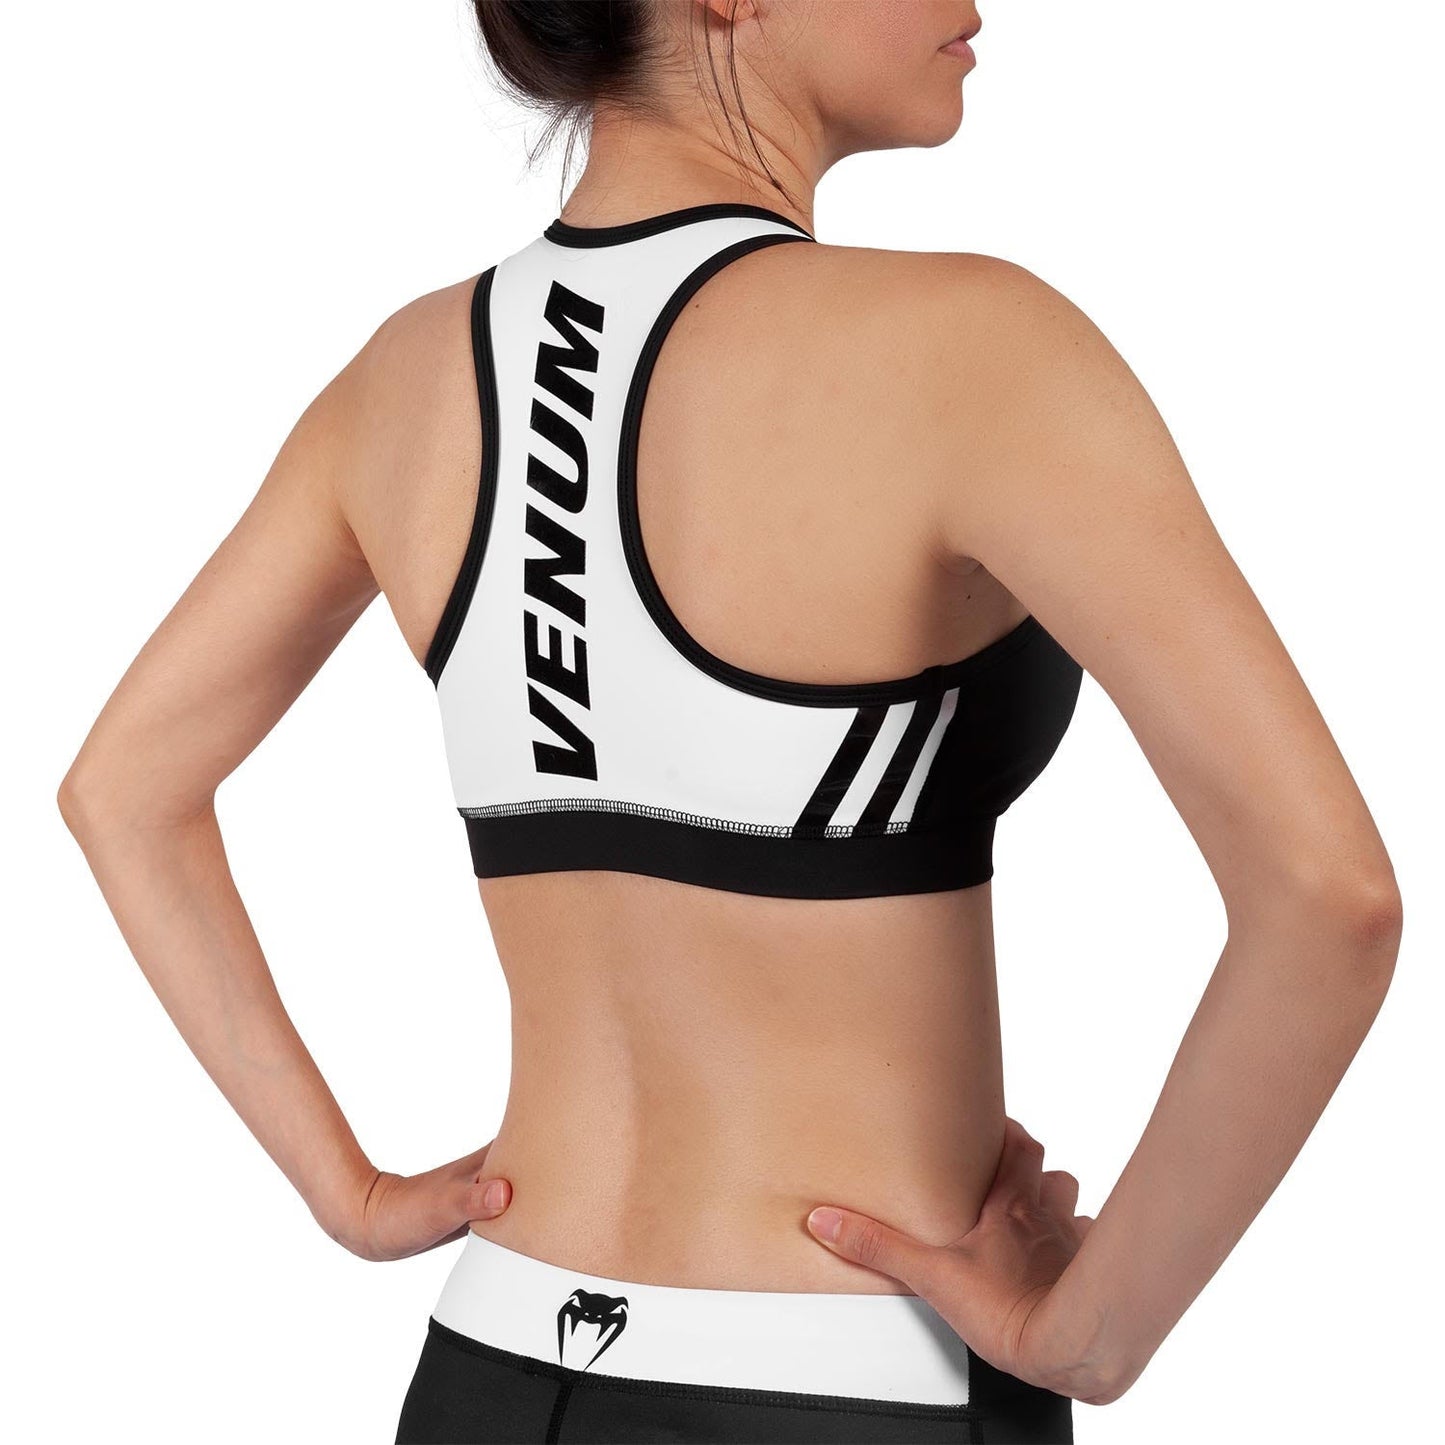 Venum Power 2.0 Sport Bra - For Women - Black/White